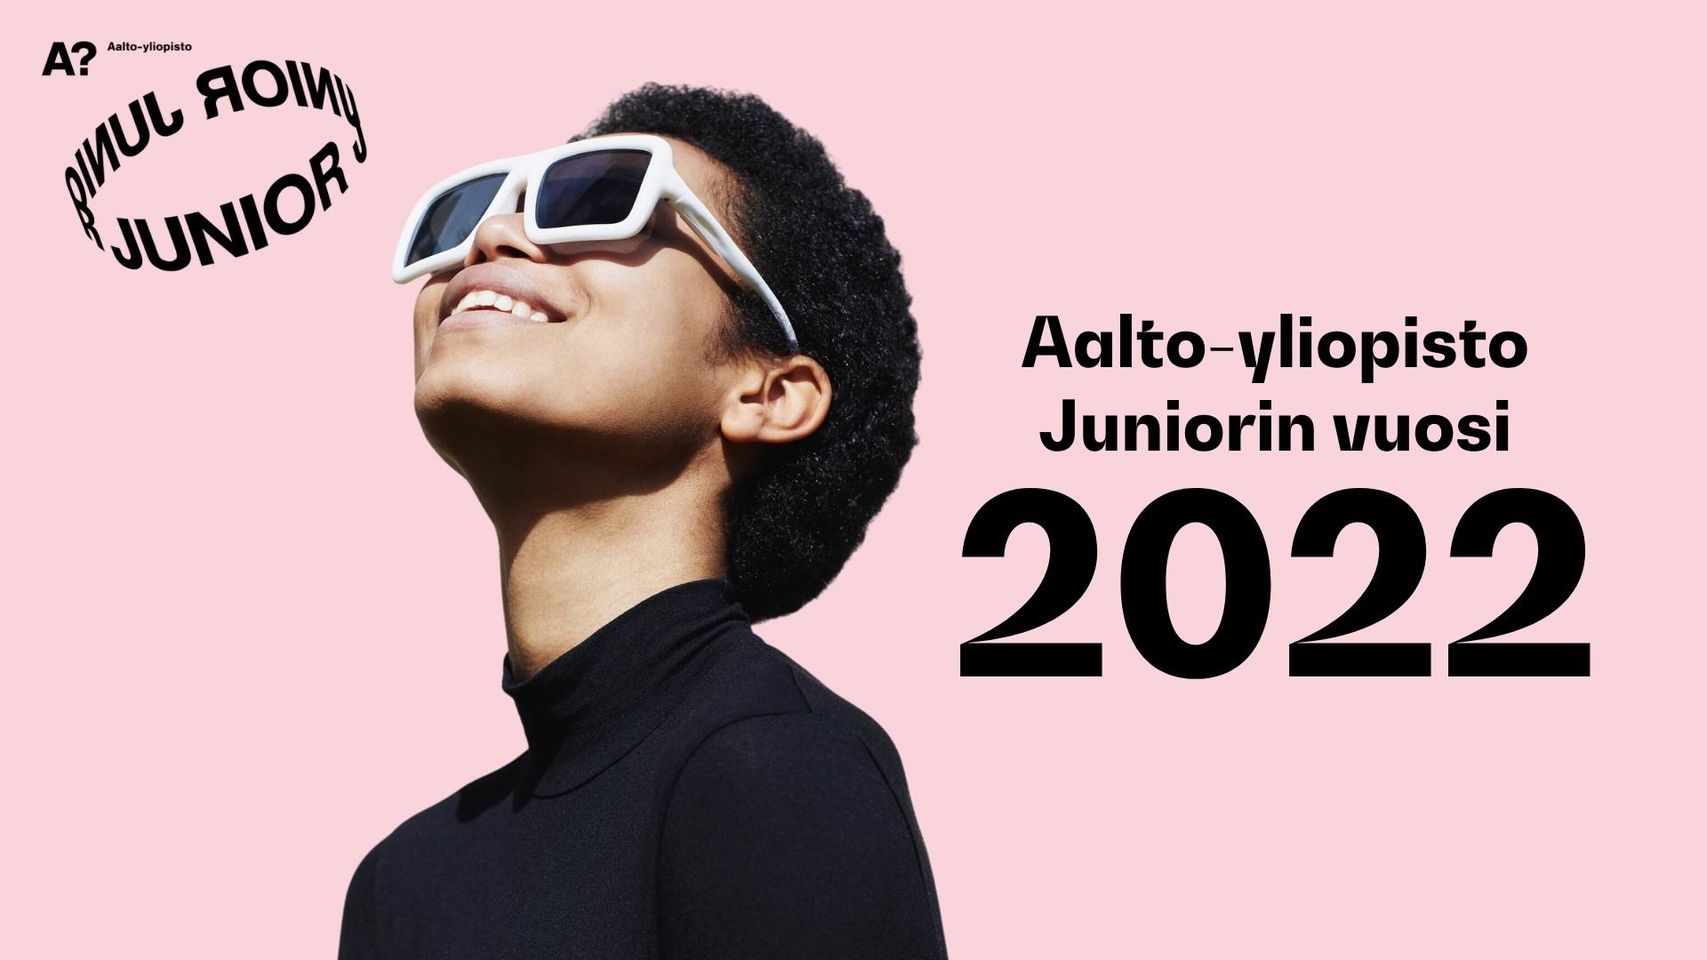 Aalto-yliopisto Juniorin vuosi 2022